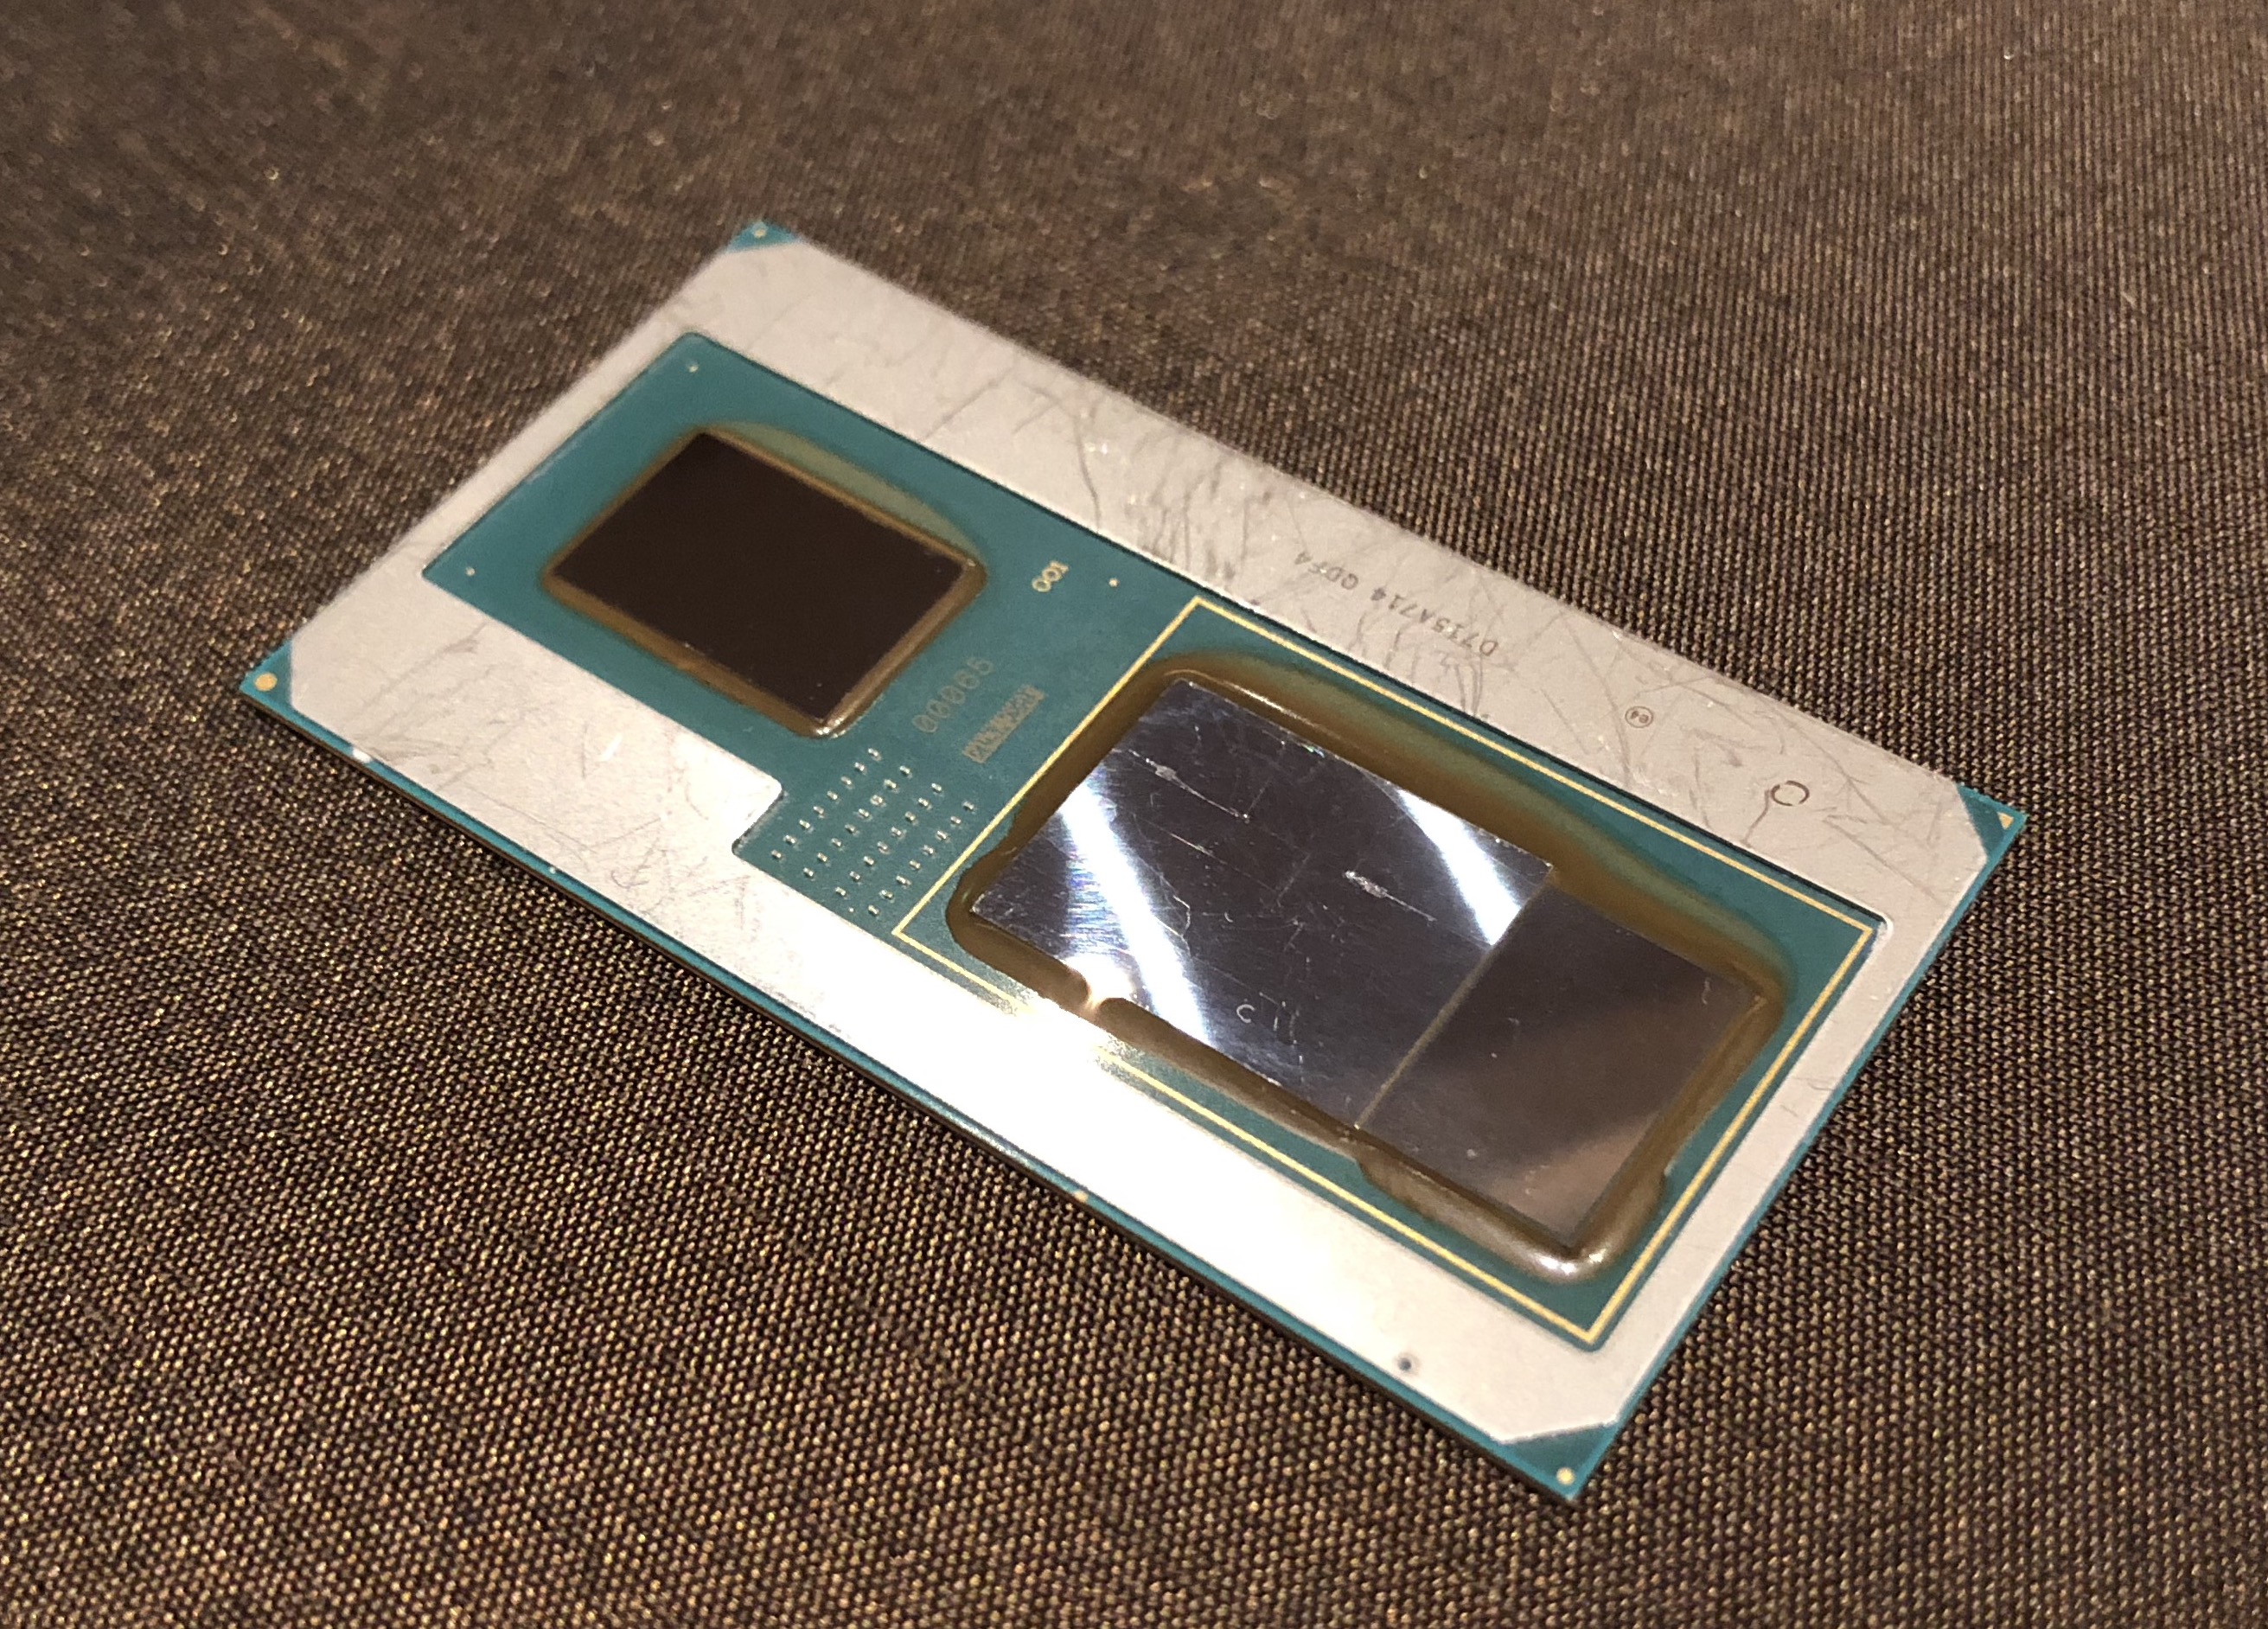 Slapen Schatting Afscheiden AMD Radeon Pro WX Vega M GL GPU - Benchmarks and Specs - NotebookCheck.net  Tech